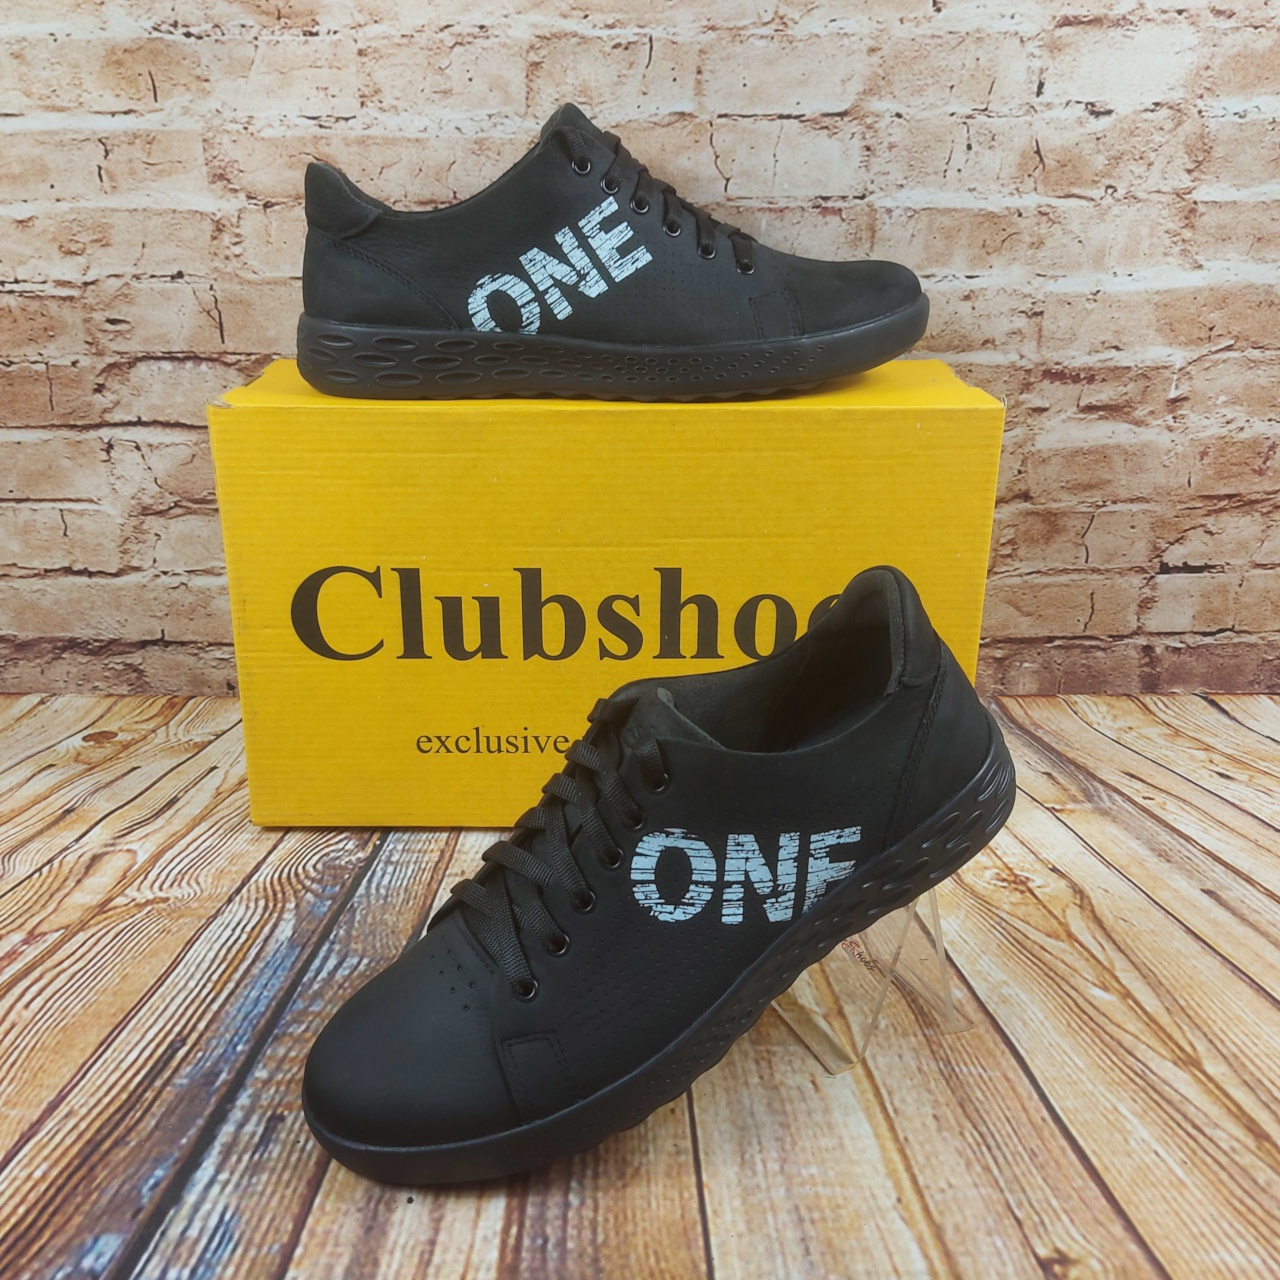 Туфли мужские CLUB SHOES 19-4 чёрные нубук на шнурках, размеры 40,43